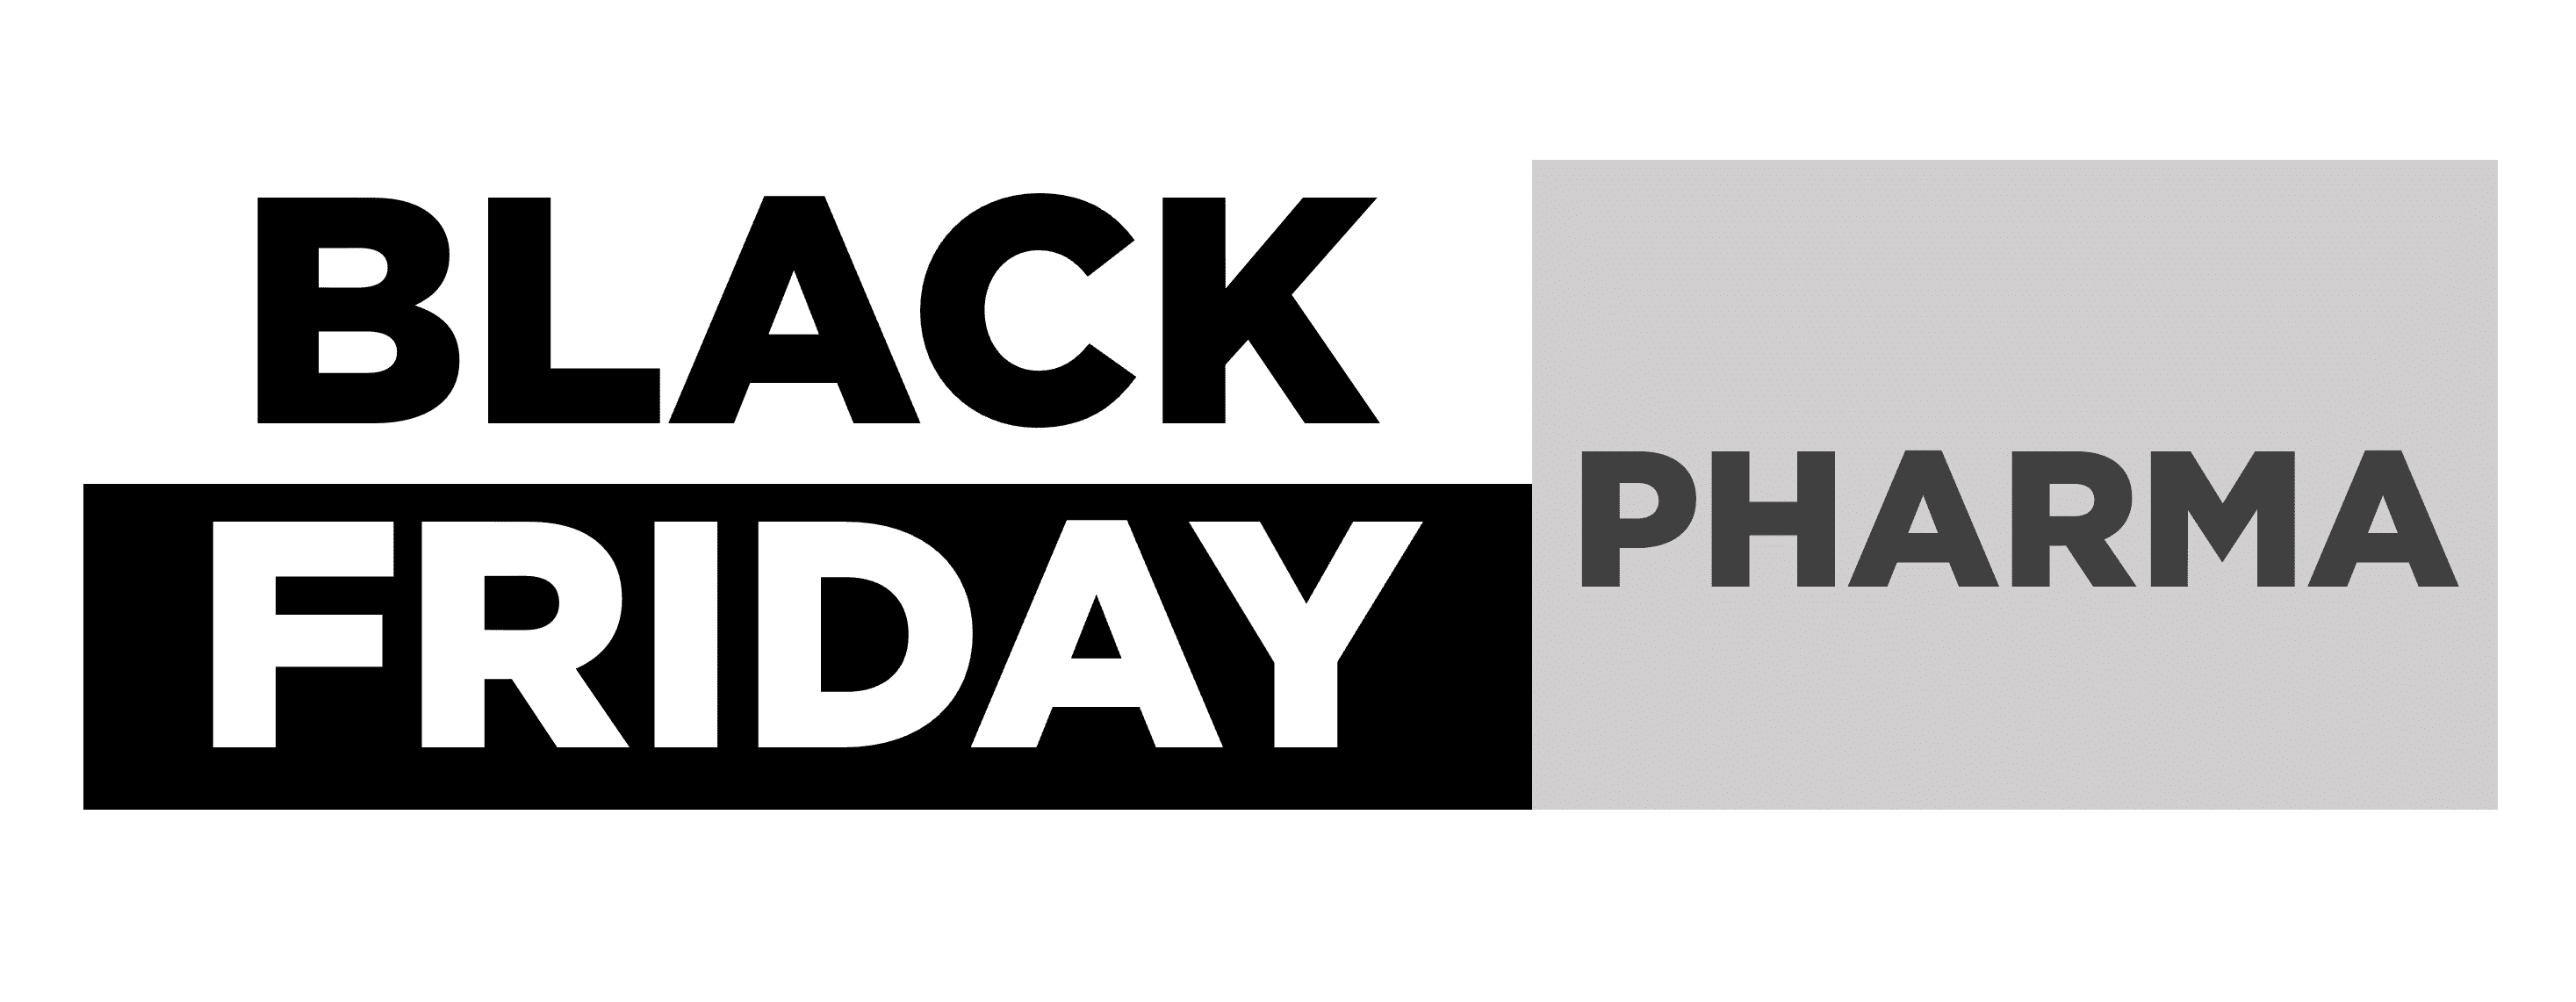 Black Friday nelle promo online delle farmacie e-commerce